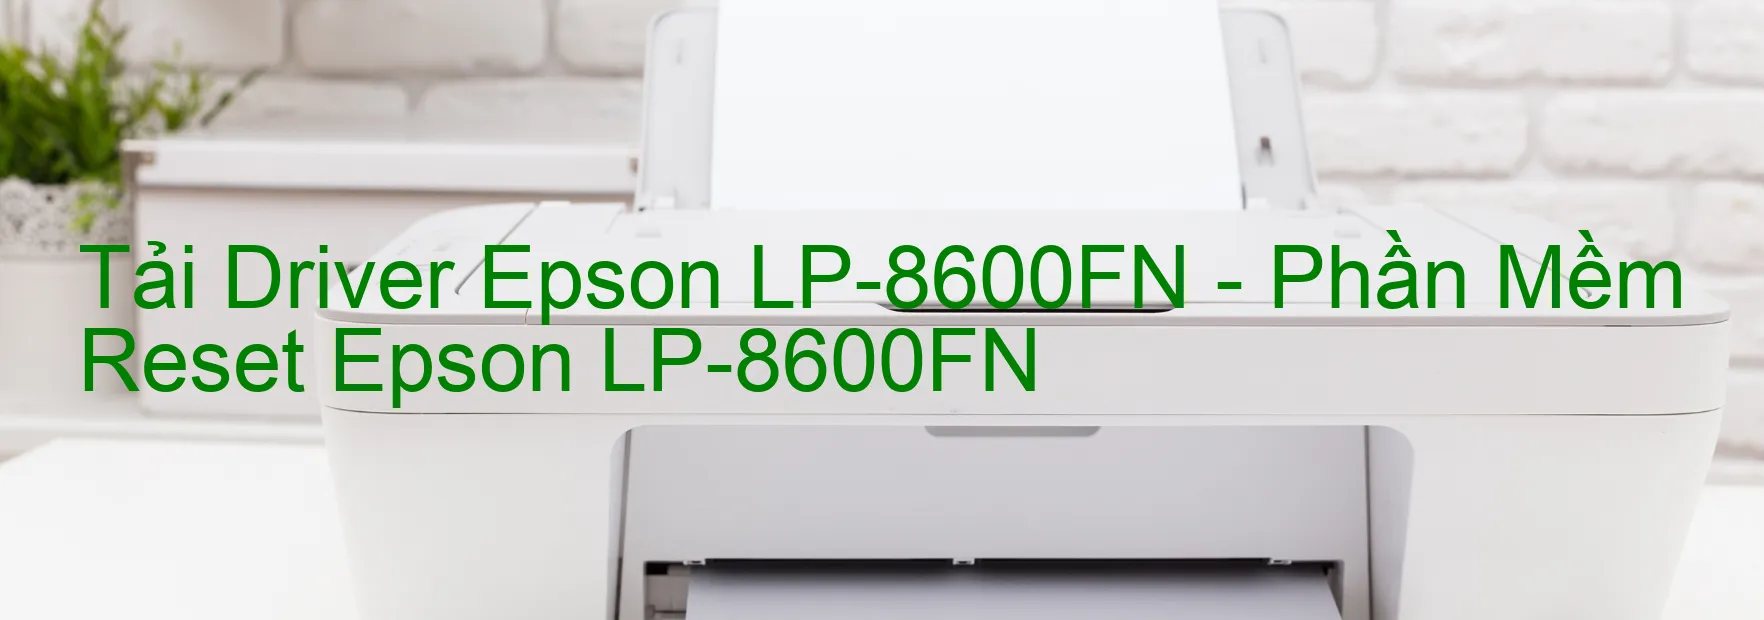 Driver Epson LP-8600FN, Phần Mềm Reset Epson LP-8600FN